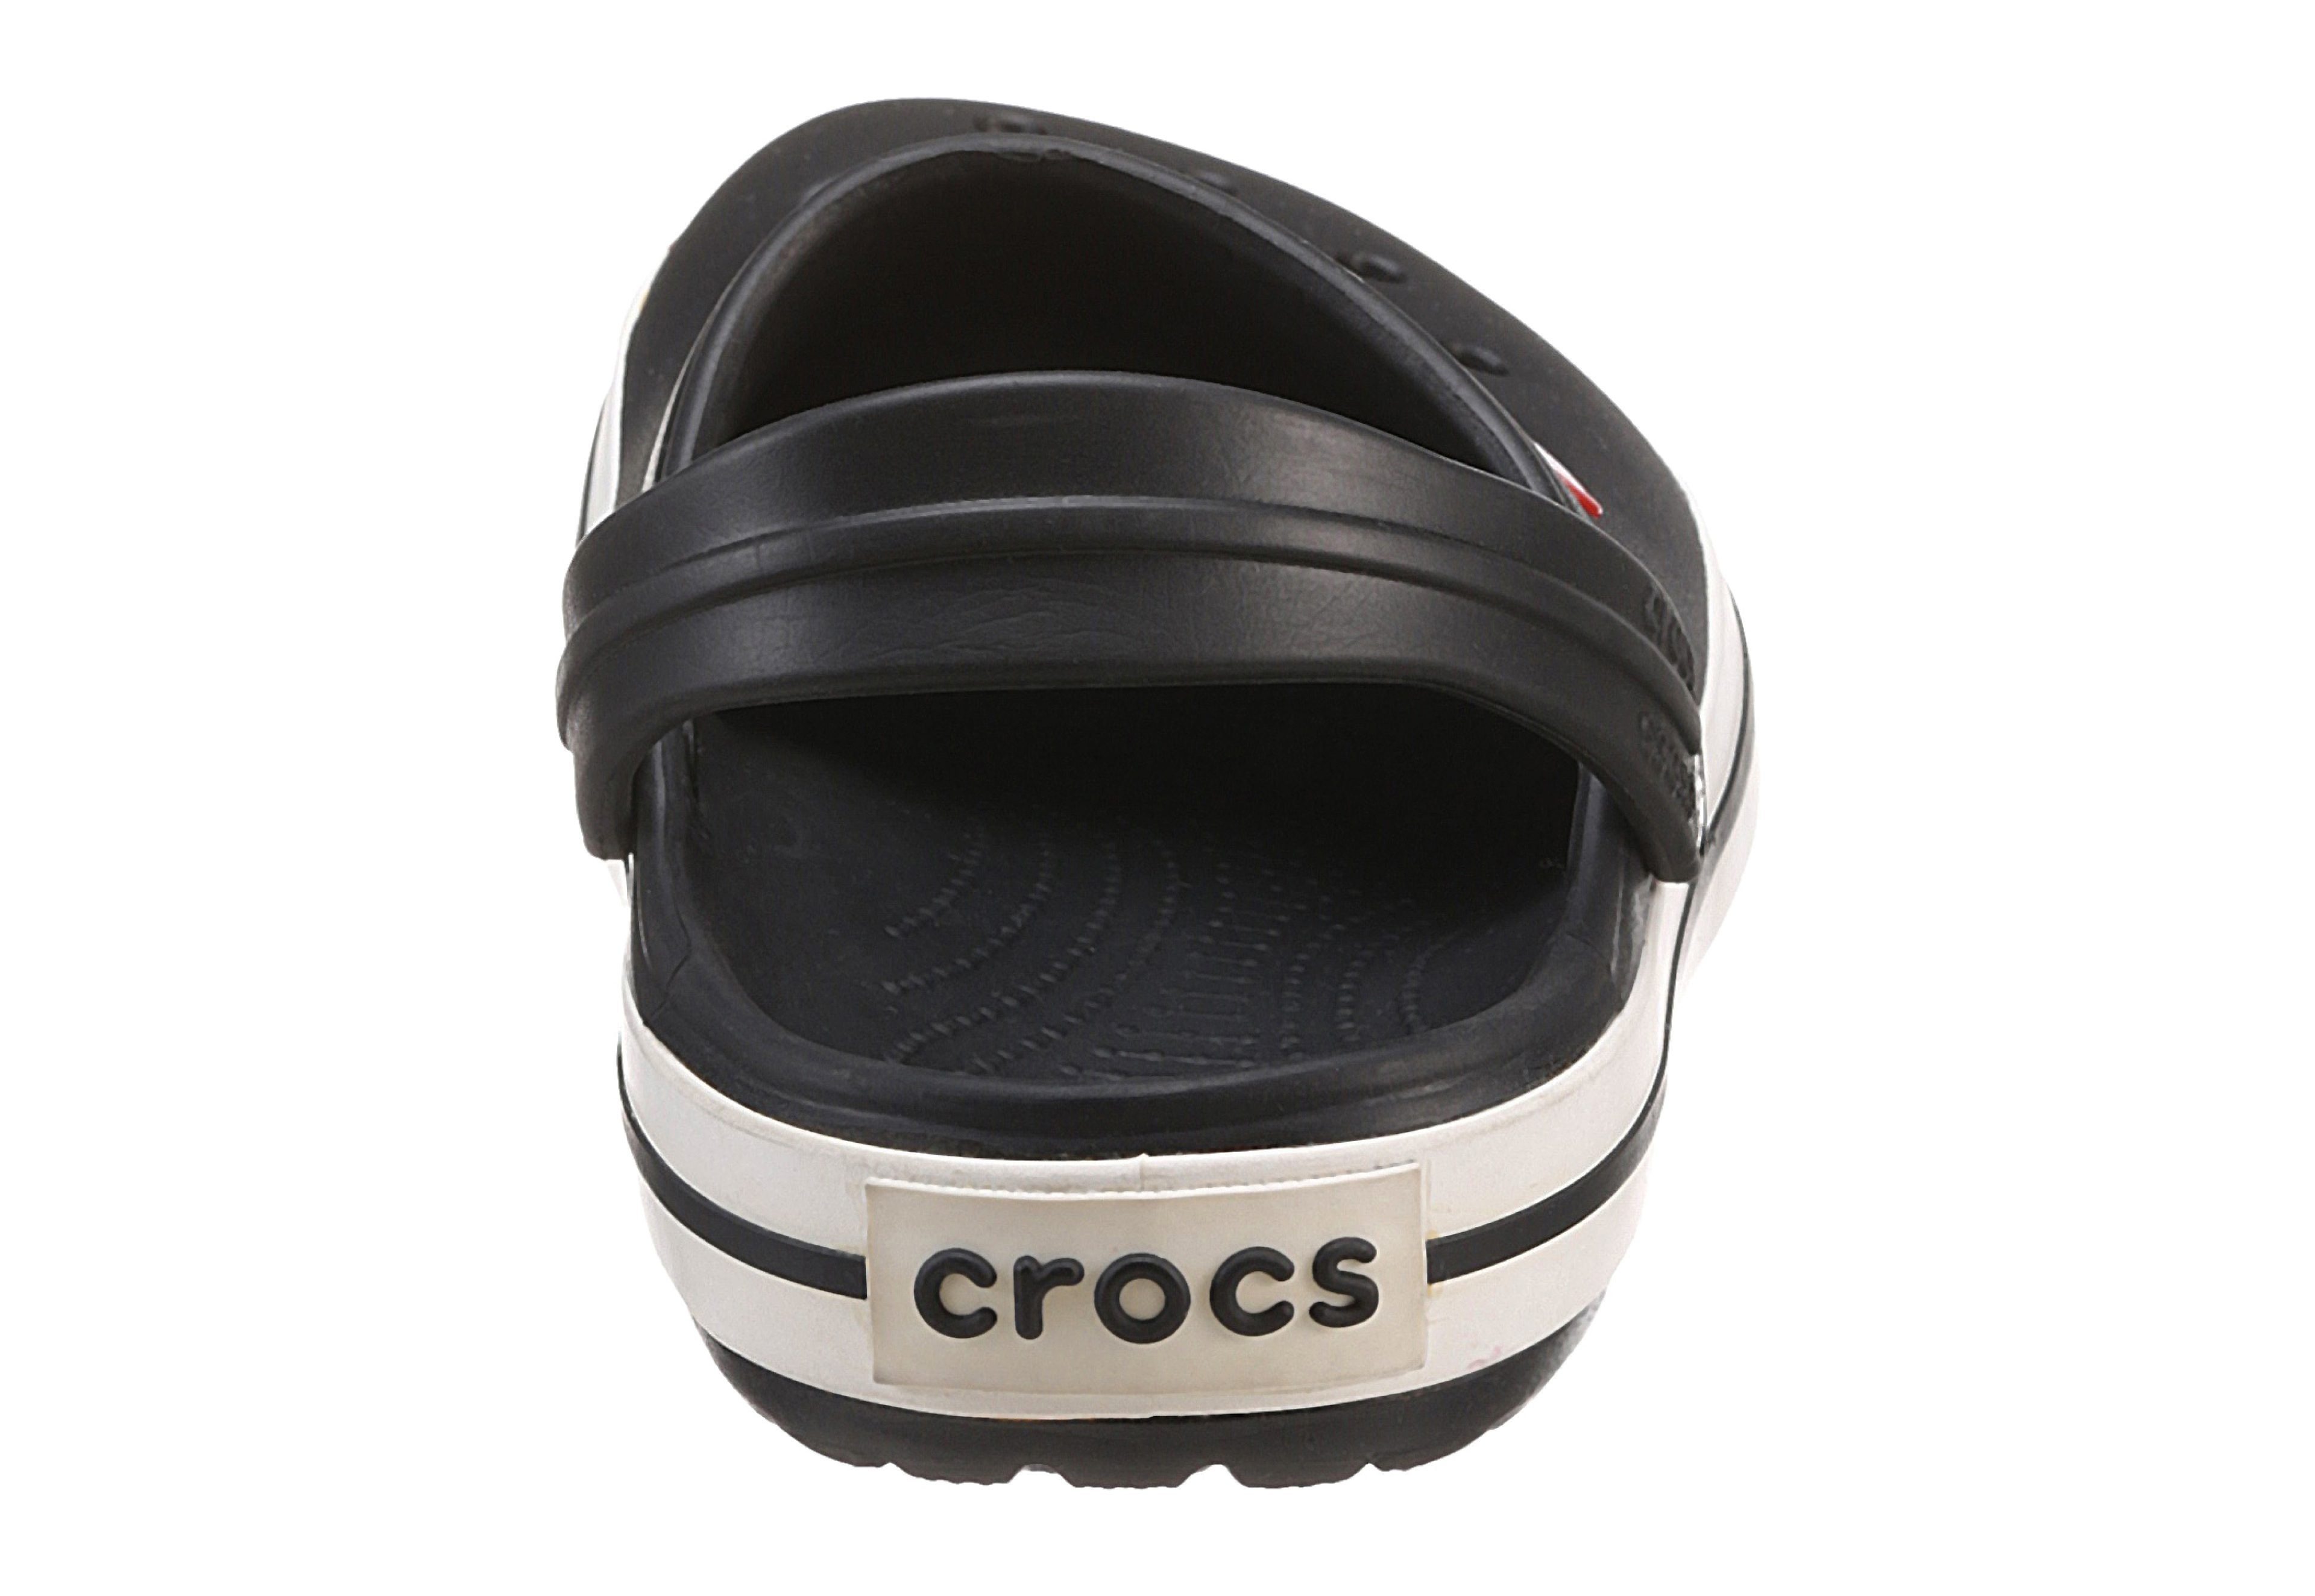 farbiger schwarz-weiß Clog Crocs Laufsohle mit Crocband